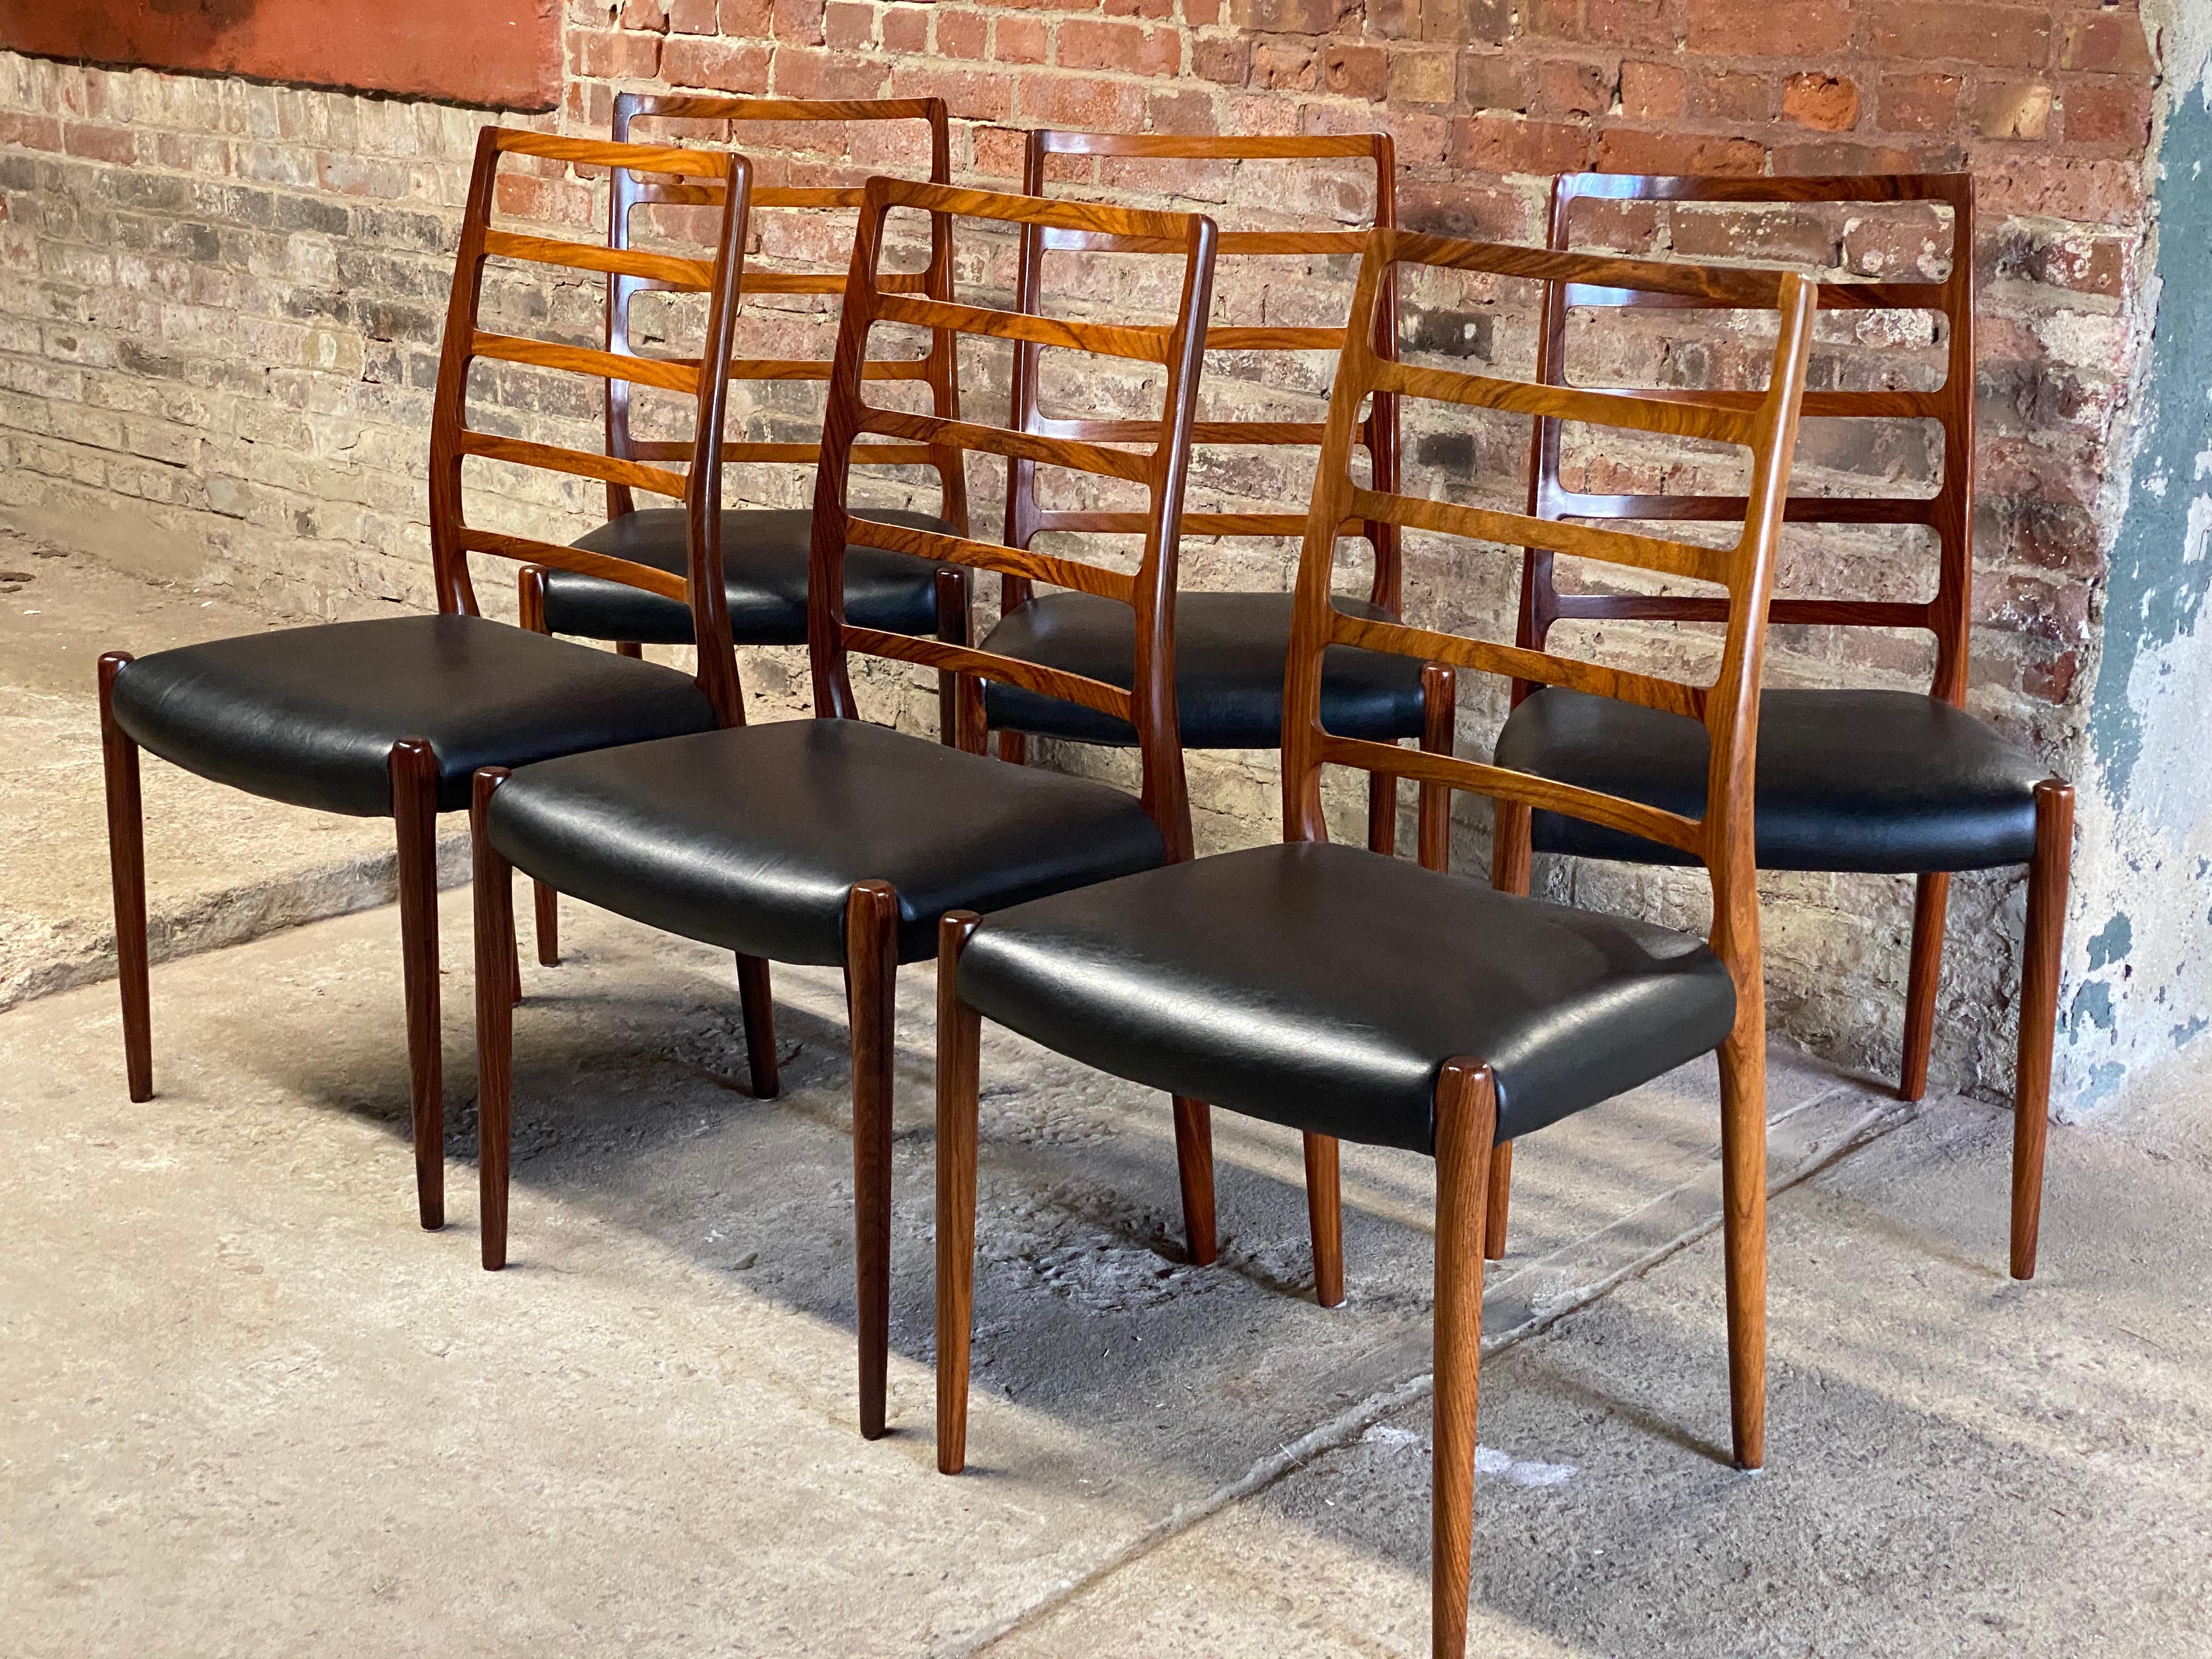 Ensemble de six impressionnantes chaises à dossier en échelle modèle 82 par Niels O. Moller pour I.L.A. Moller Mobelfabrik. Ce fauteuil est fabriqué en bois de rose massif, avec des sièges en vinyle noir récemment restaurés, des pieds élégamment